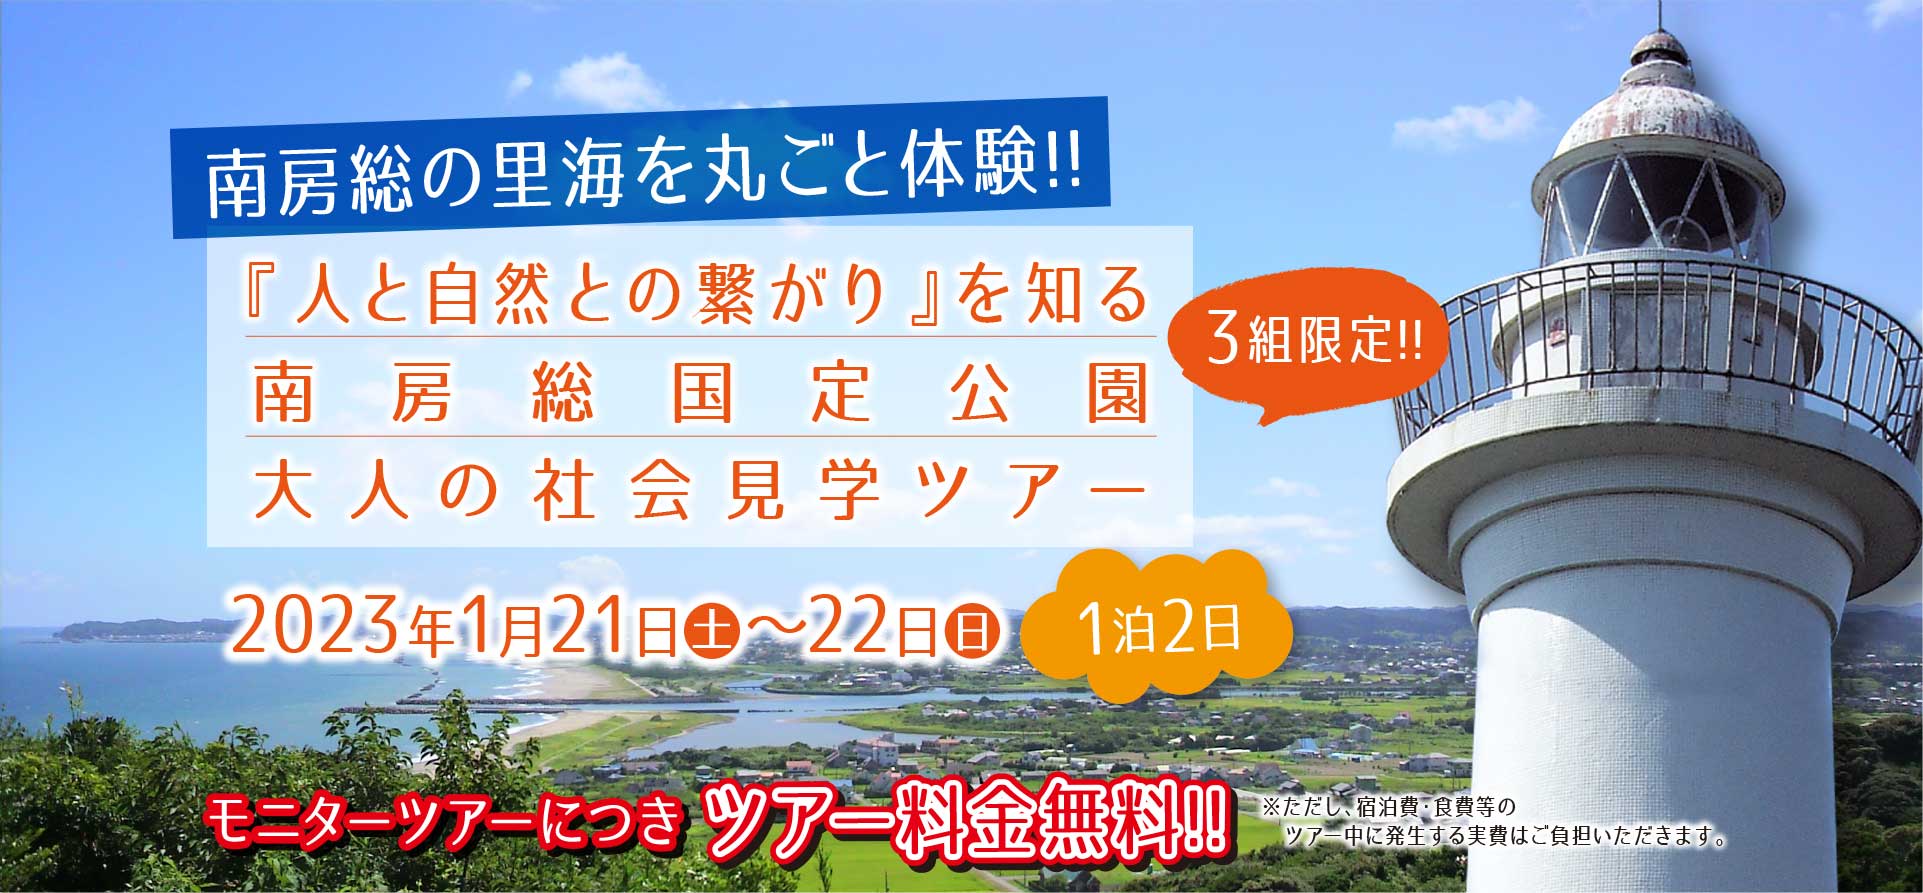 【募集開始】「首都圏に最も近い自然豊かな田舎」千葉県いすみ市で、「人と自然との繋がり」を体感できる「大人の社会見学ツアー」を実施